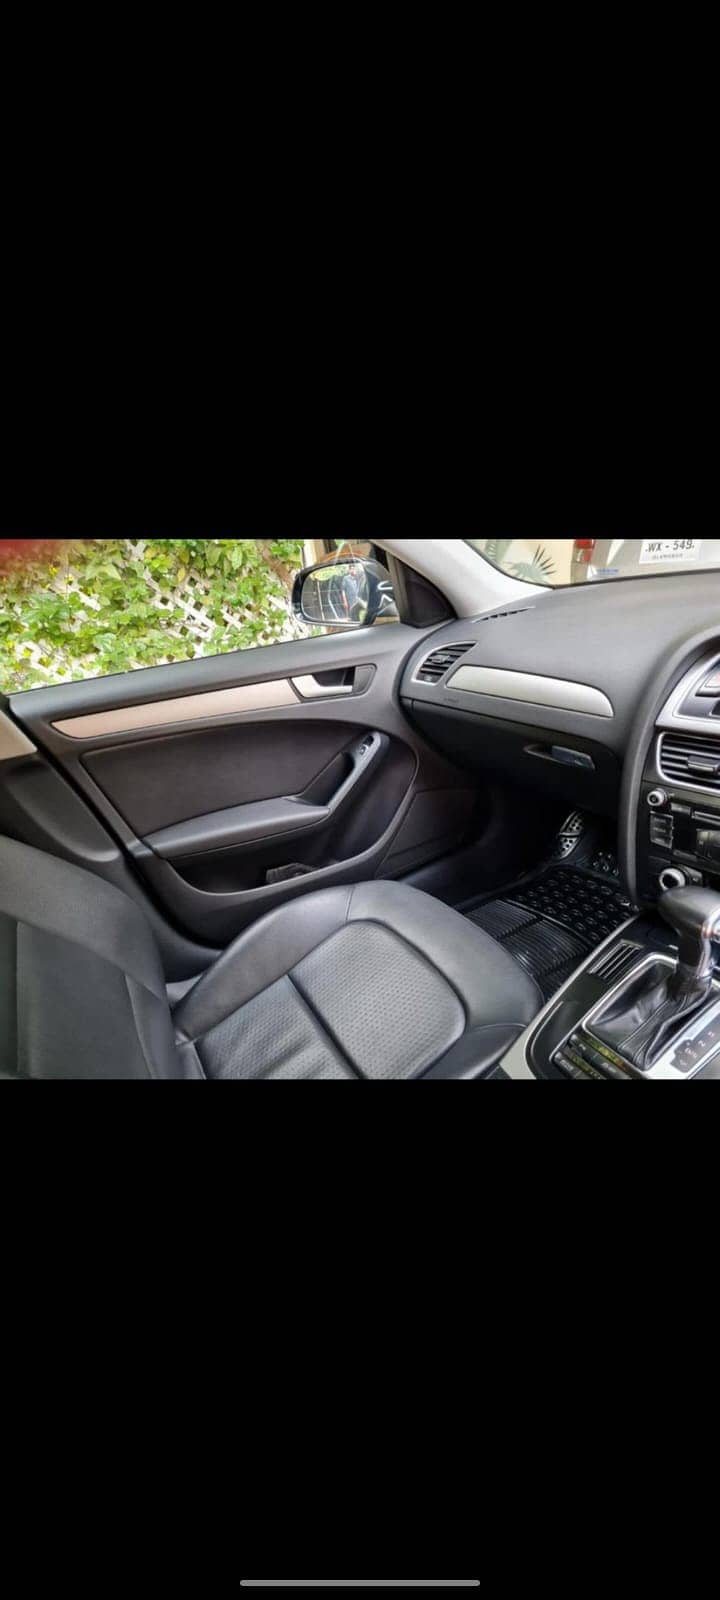 Audi A4 lemosine 2013 Model 8